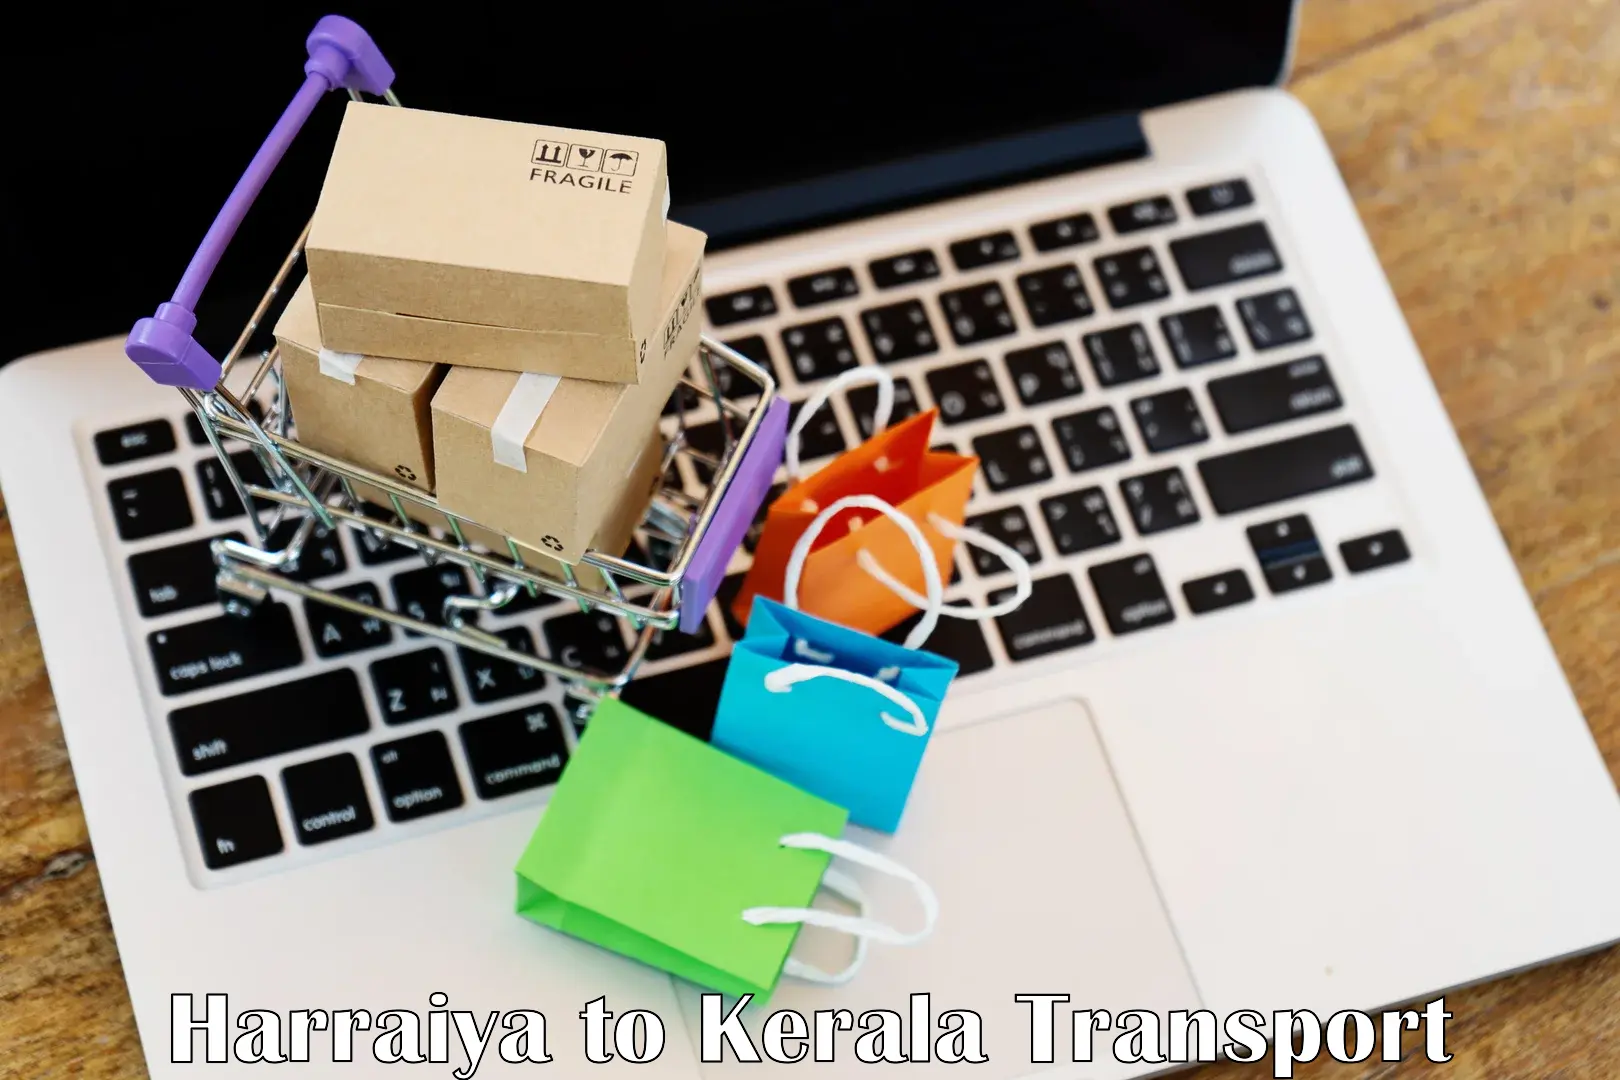 Online transport booking Harraiya to Kerala